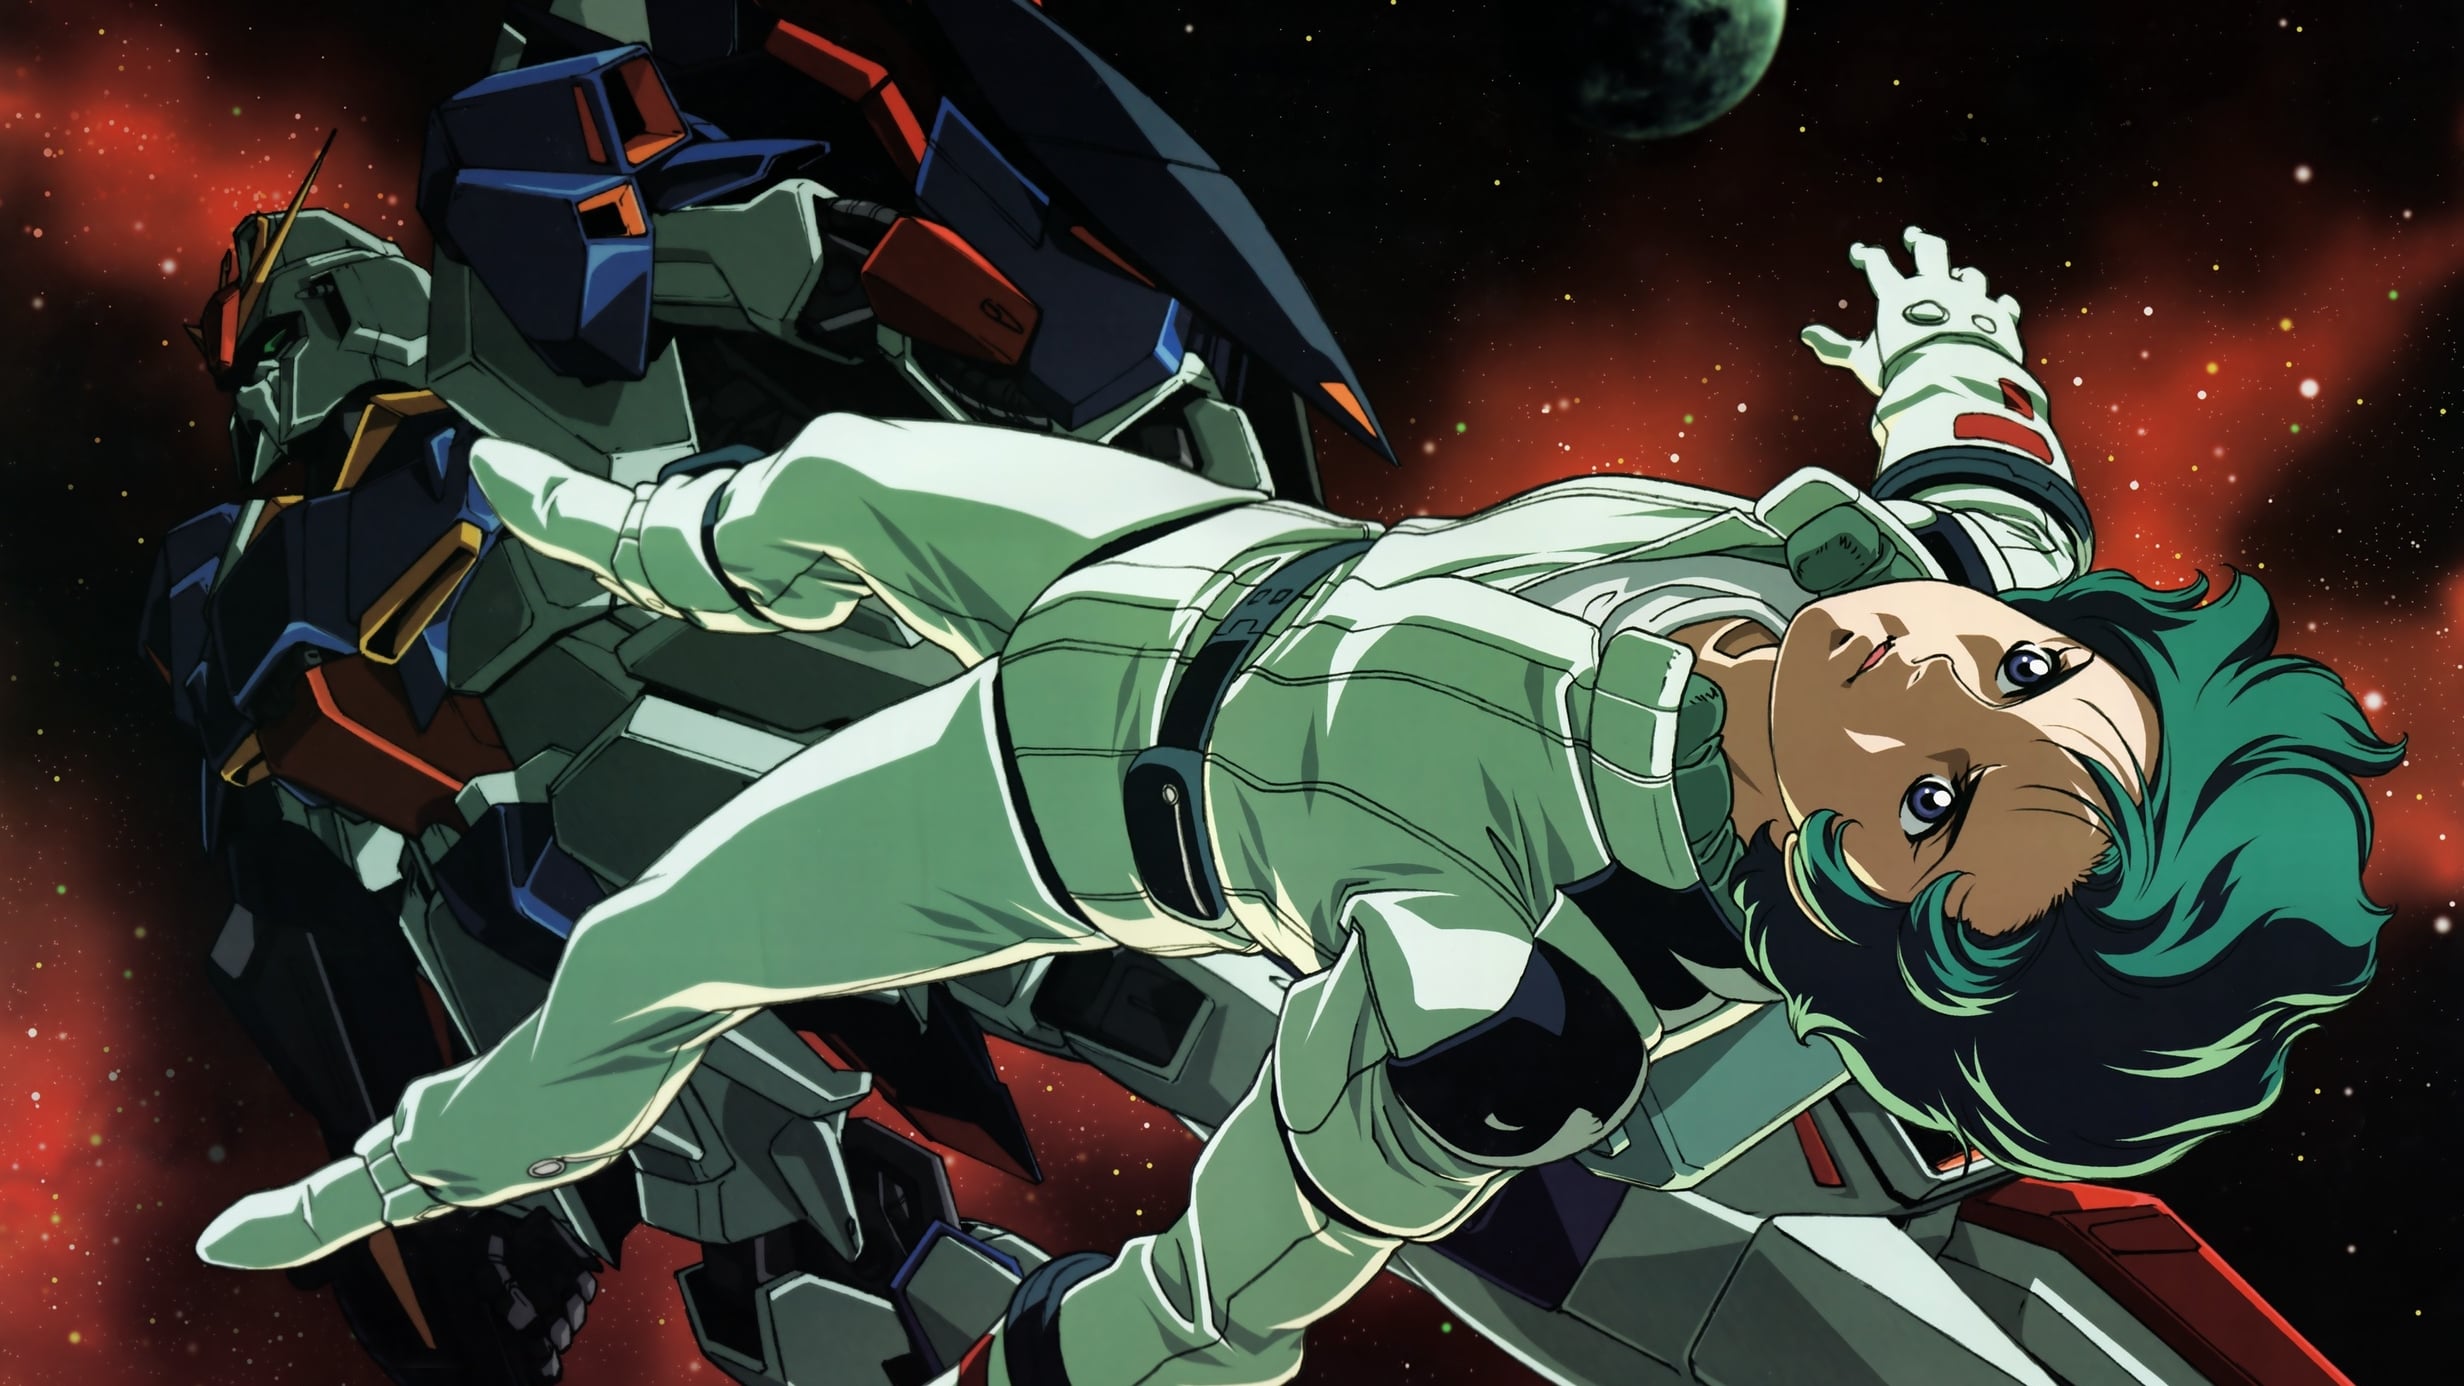 Mobile Suit Zeta Gundam Uma Nova Tradução III: O Amor é o Pulso das Estrelas (2006)